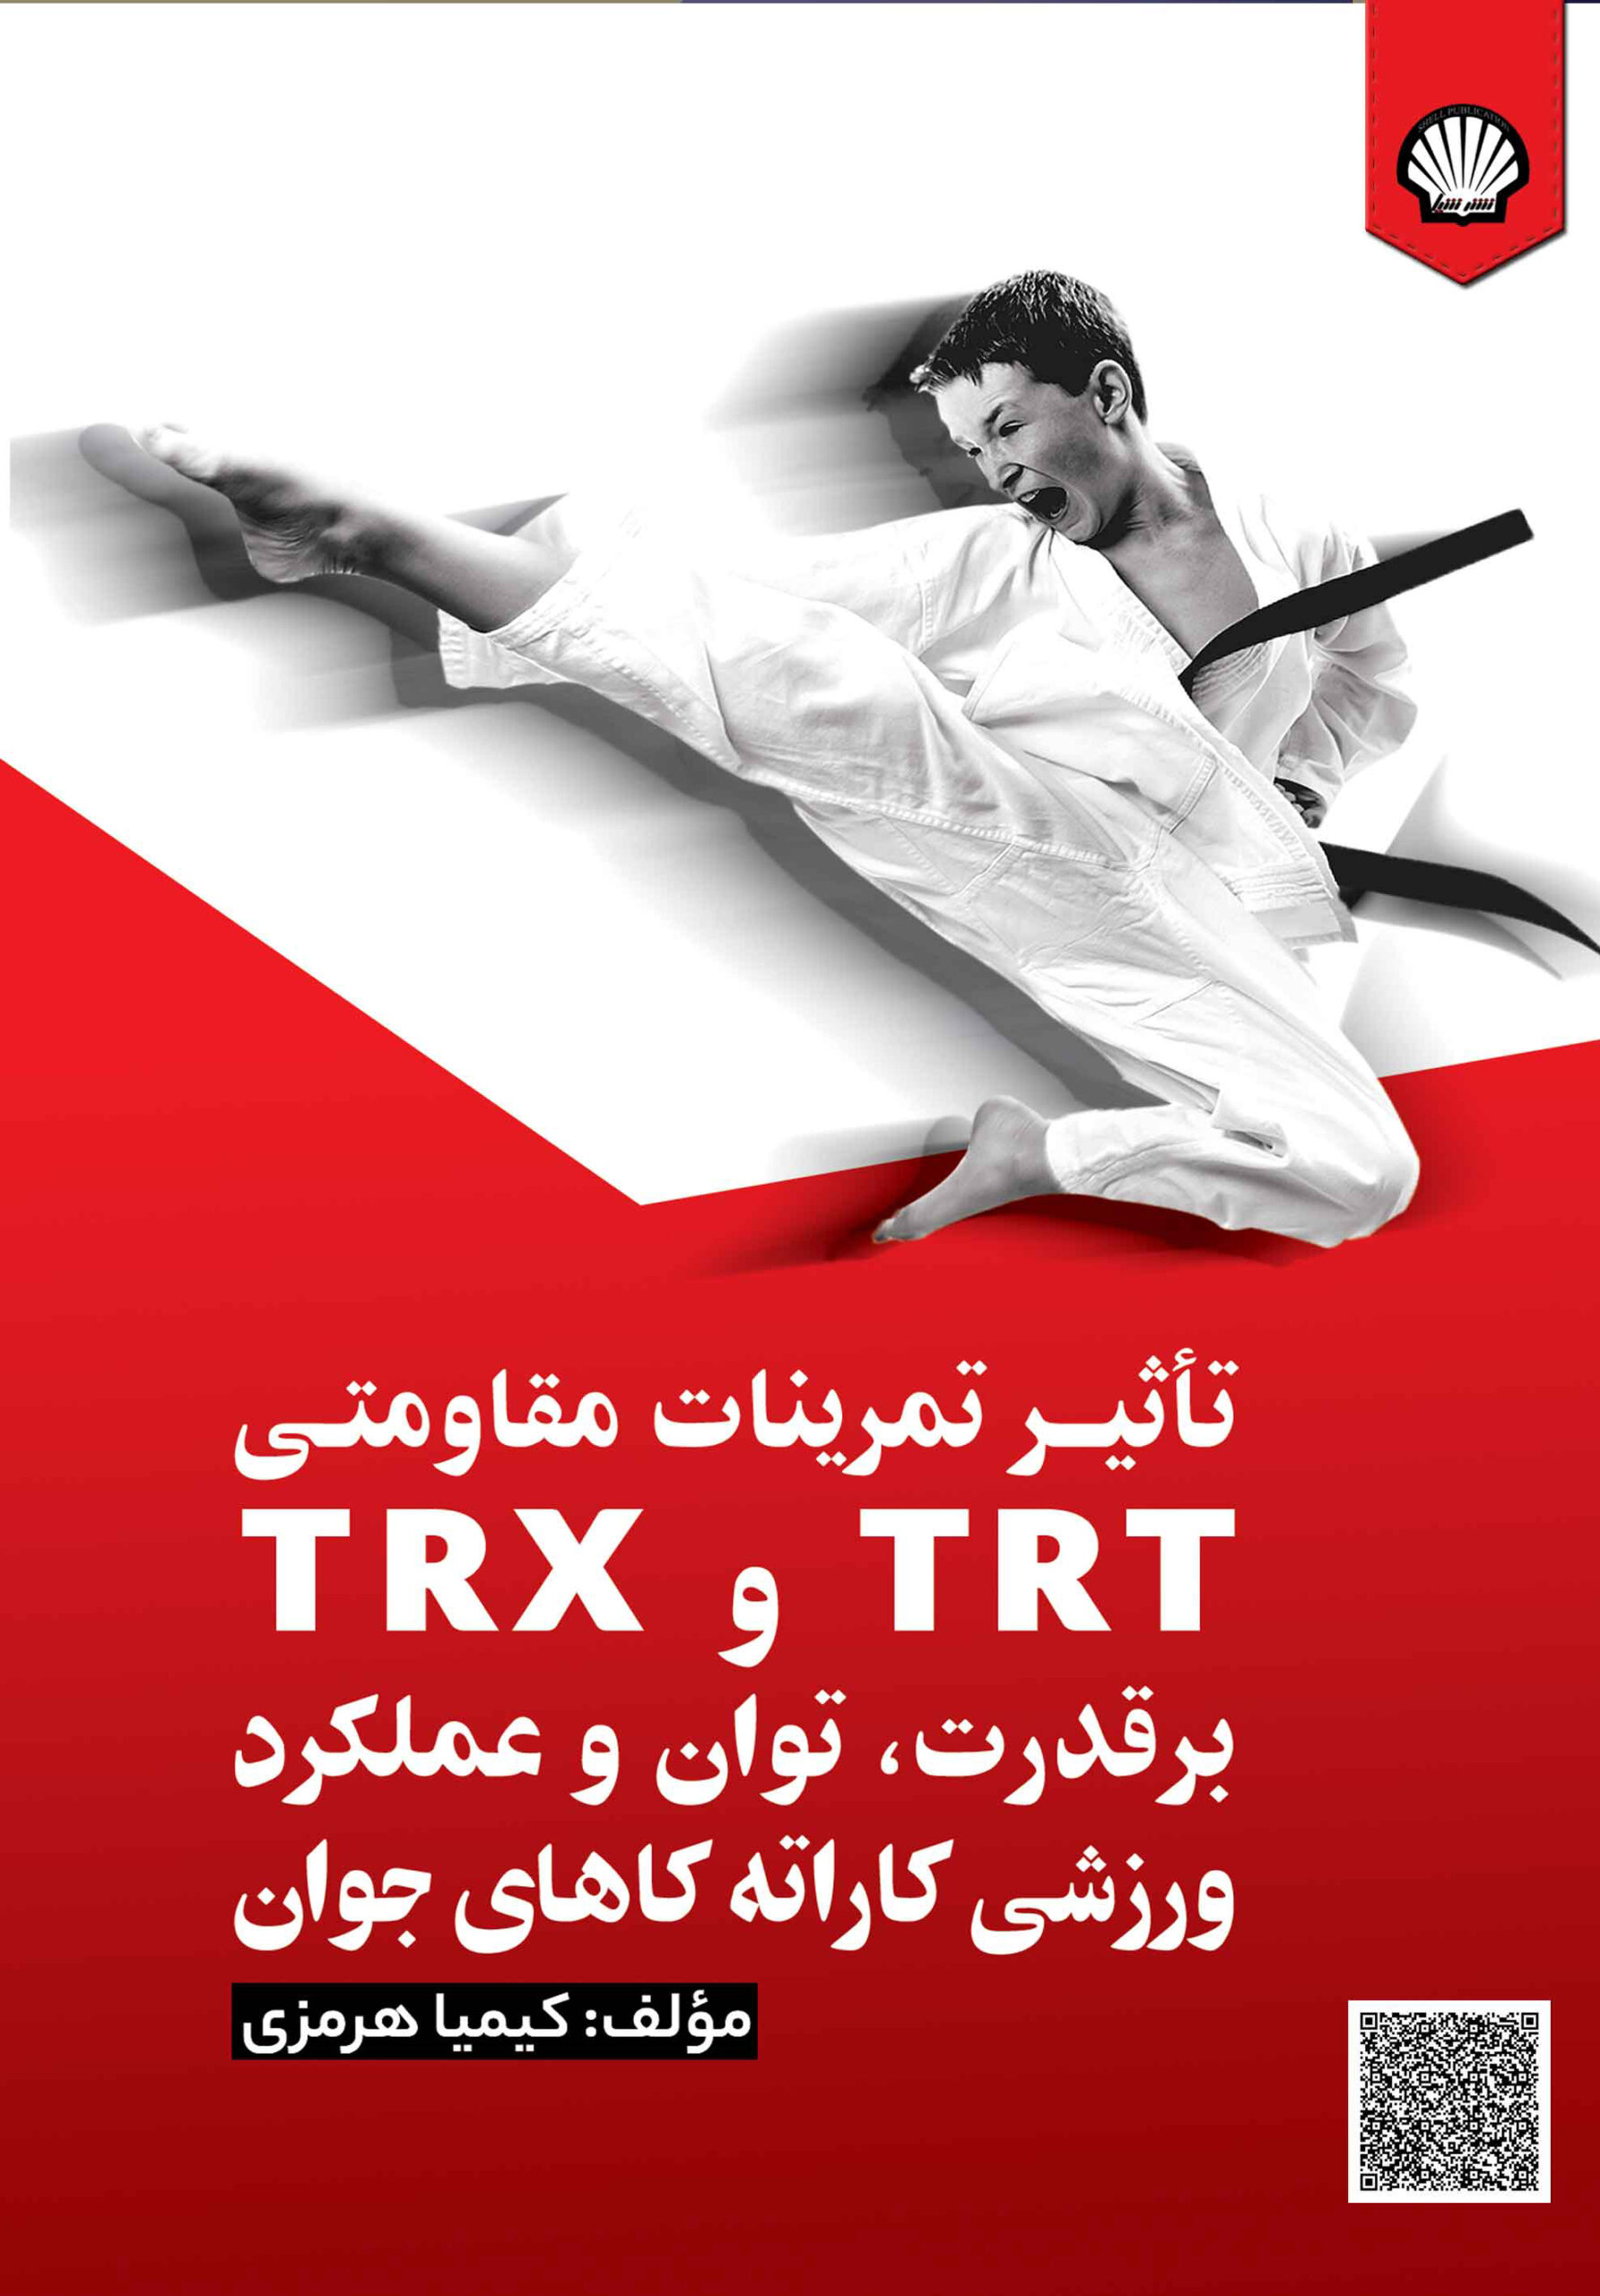 تاثیر تمرینات مقاومتی TRT و TRX بر قدرت، توان و عملکرد ورزشی کاراته کاهای جوان